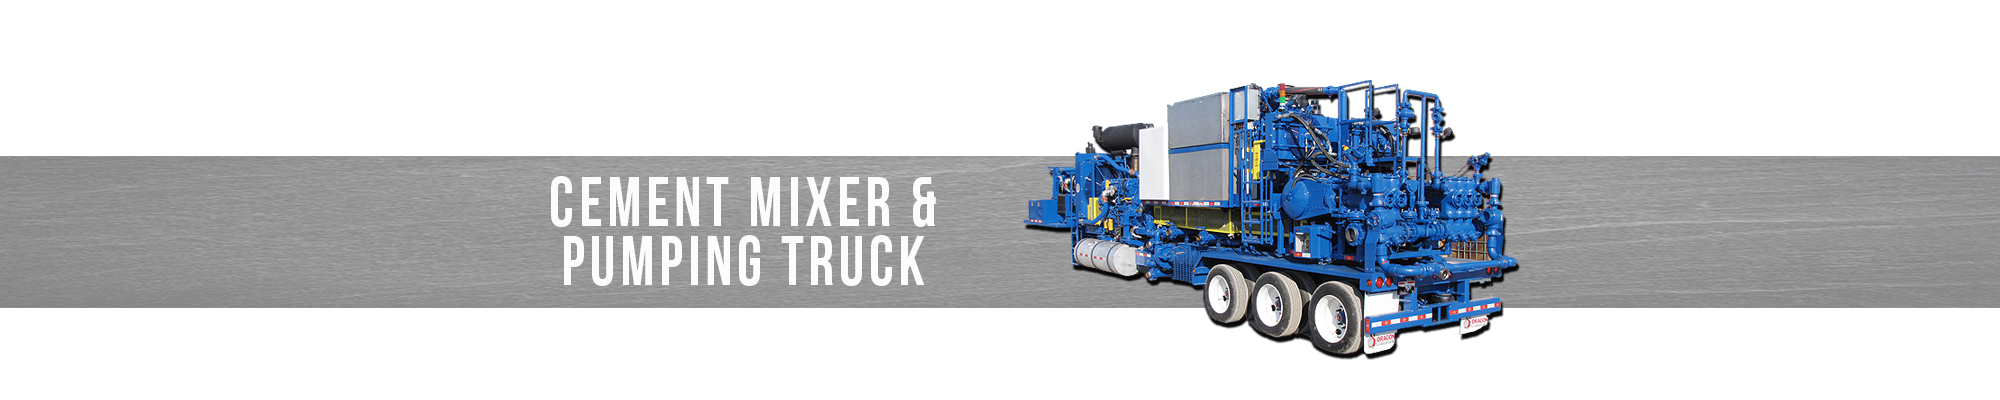 Cement Mixer & Pumping Truck